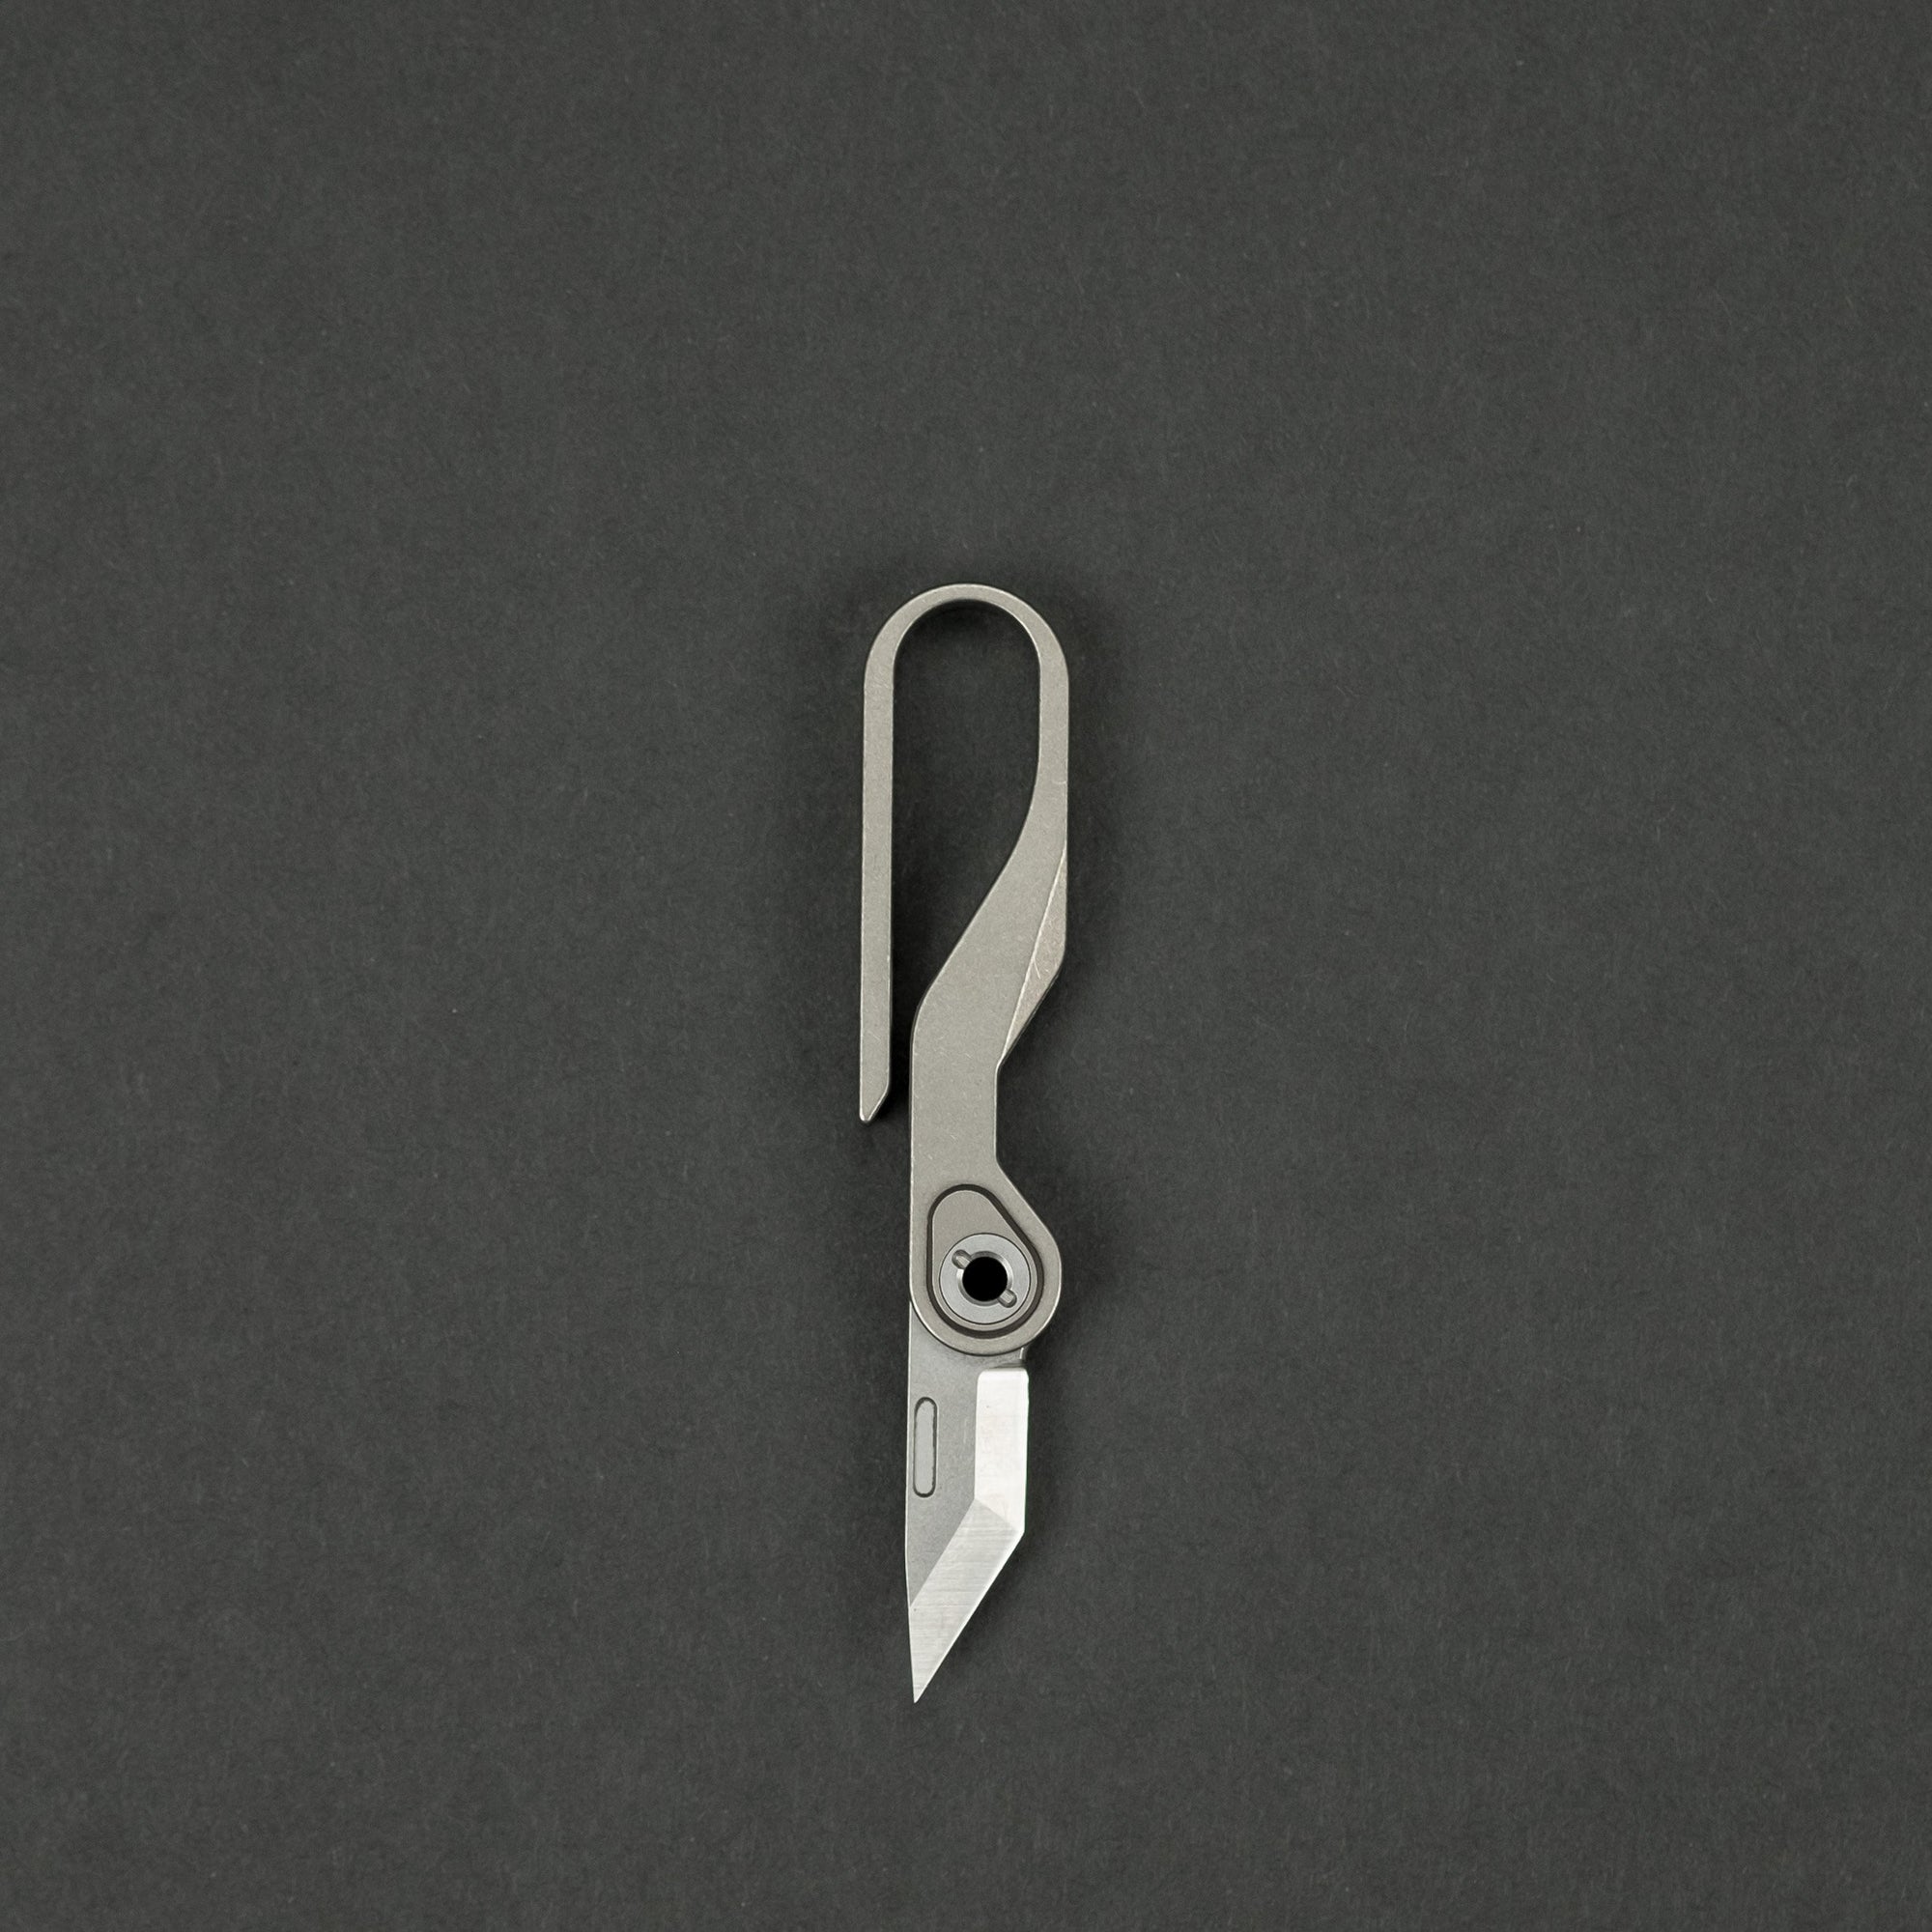 Dapper Design Klip  Folding Pocket Knife with Clip